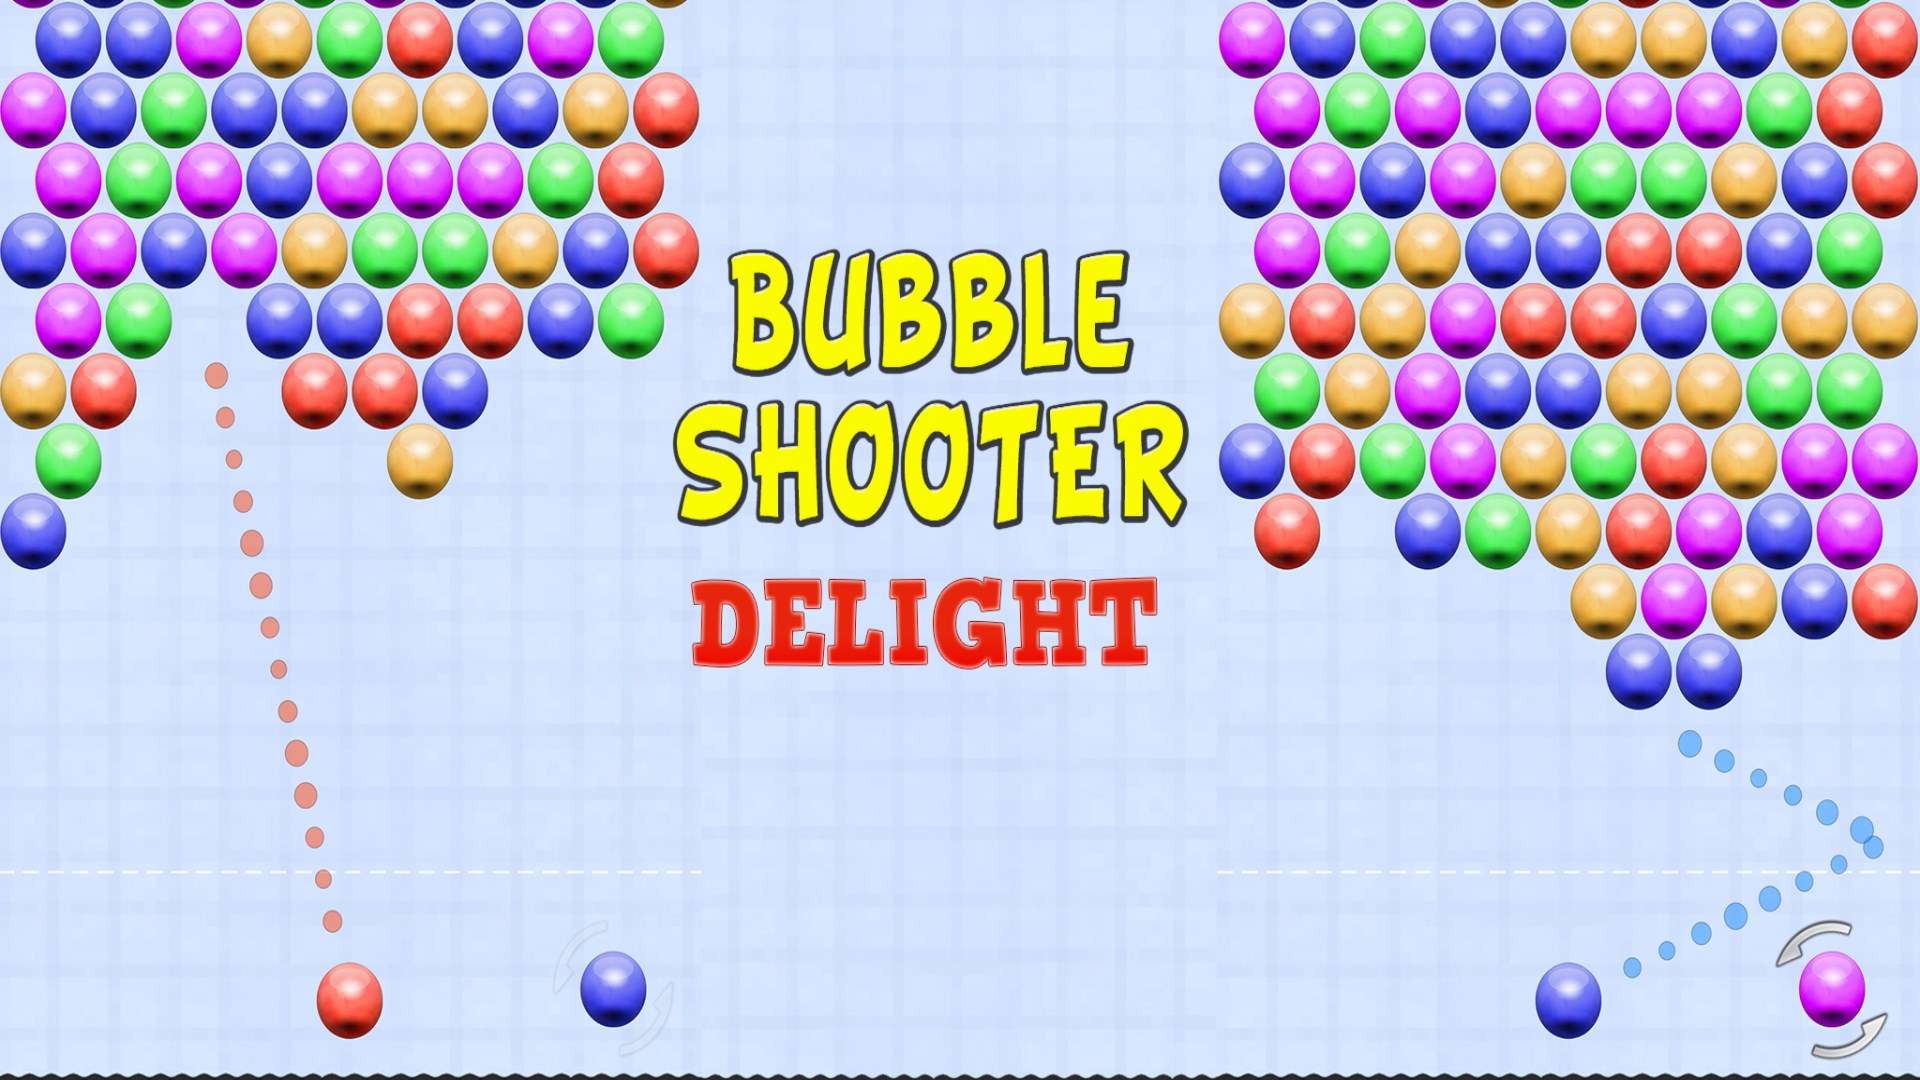 Get Bubble Shooter Delight - Microsoft Store en-IN